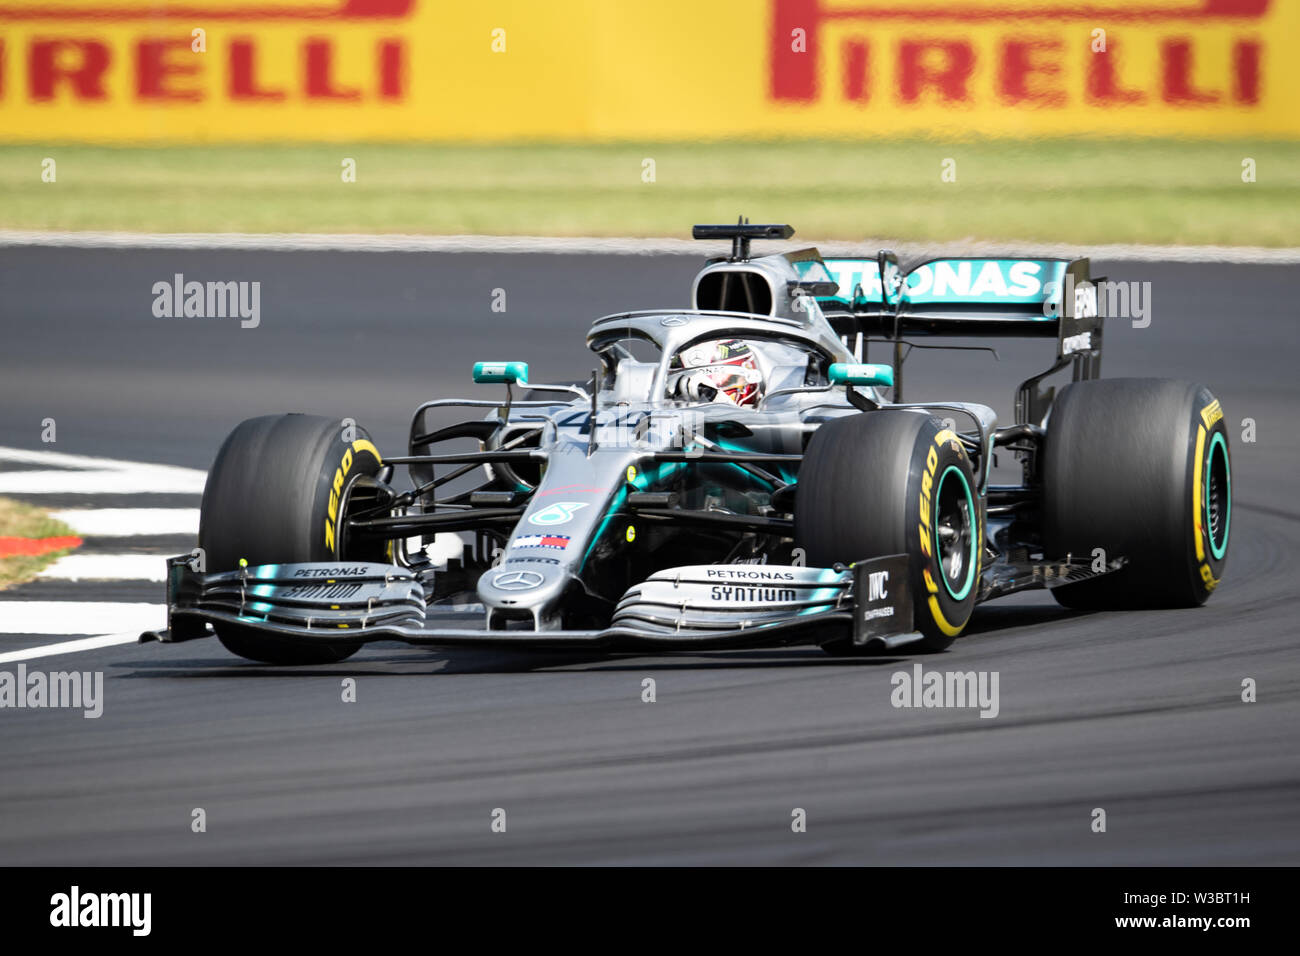 Silverstone, en el Reino Unido. El 14 de julio, 2019. Lewis Hamilton de  Mercedes en acción durante el día de la carrera de Fórmula 1 Grand Prix  Británico Rolex 2019 en el